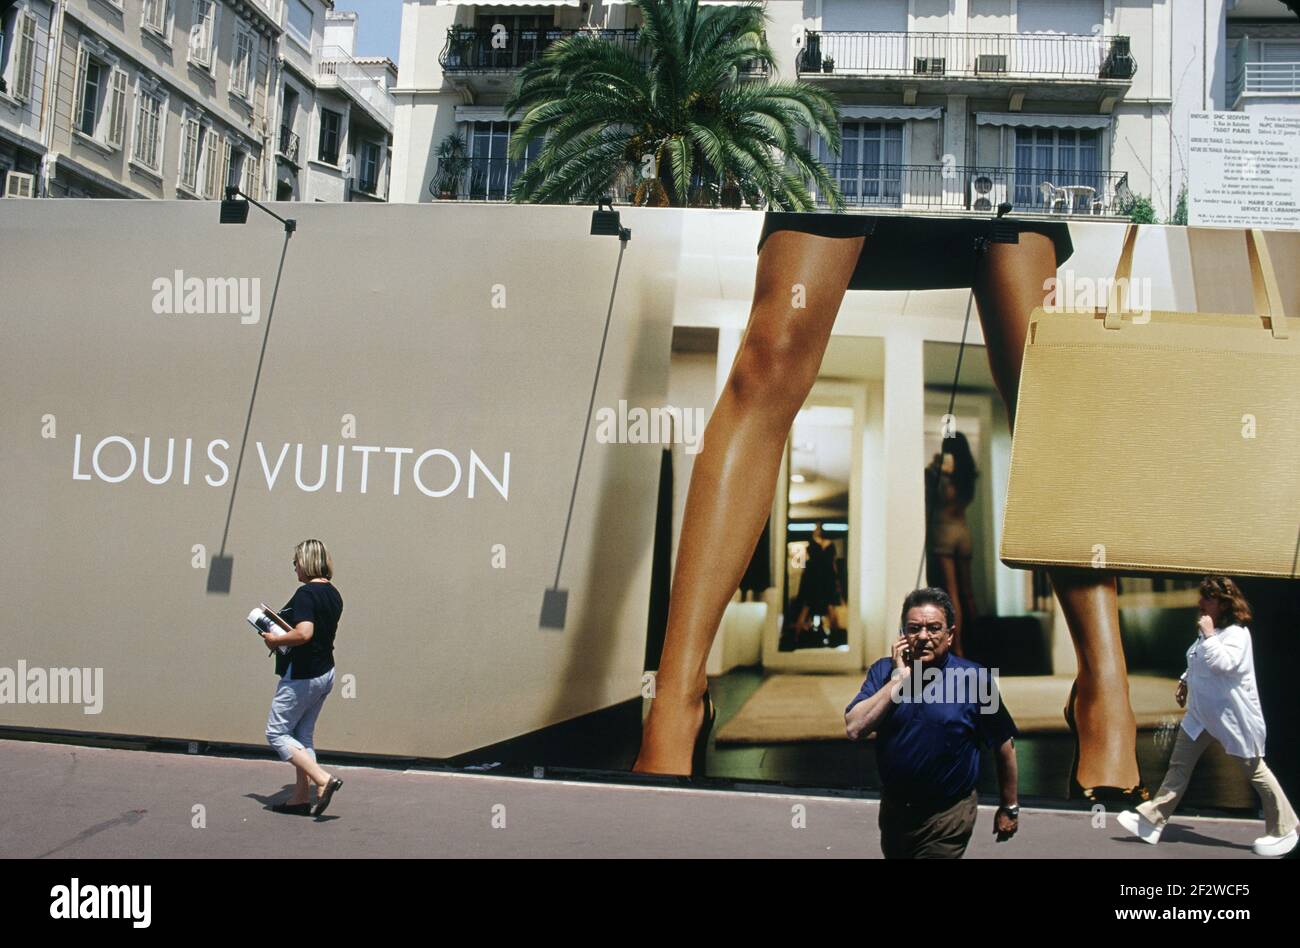 Louis Vuitton Ads Poster G337596 